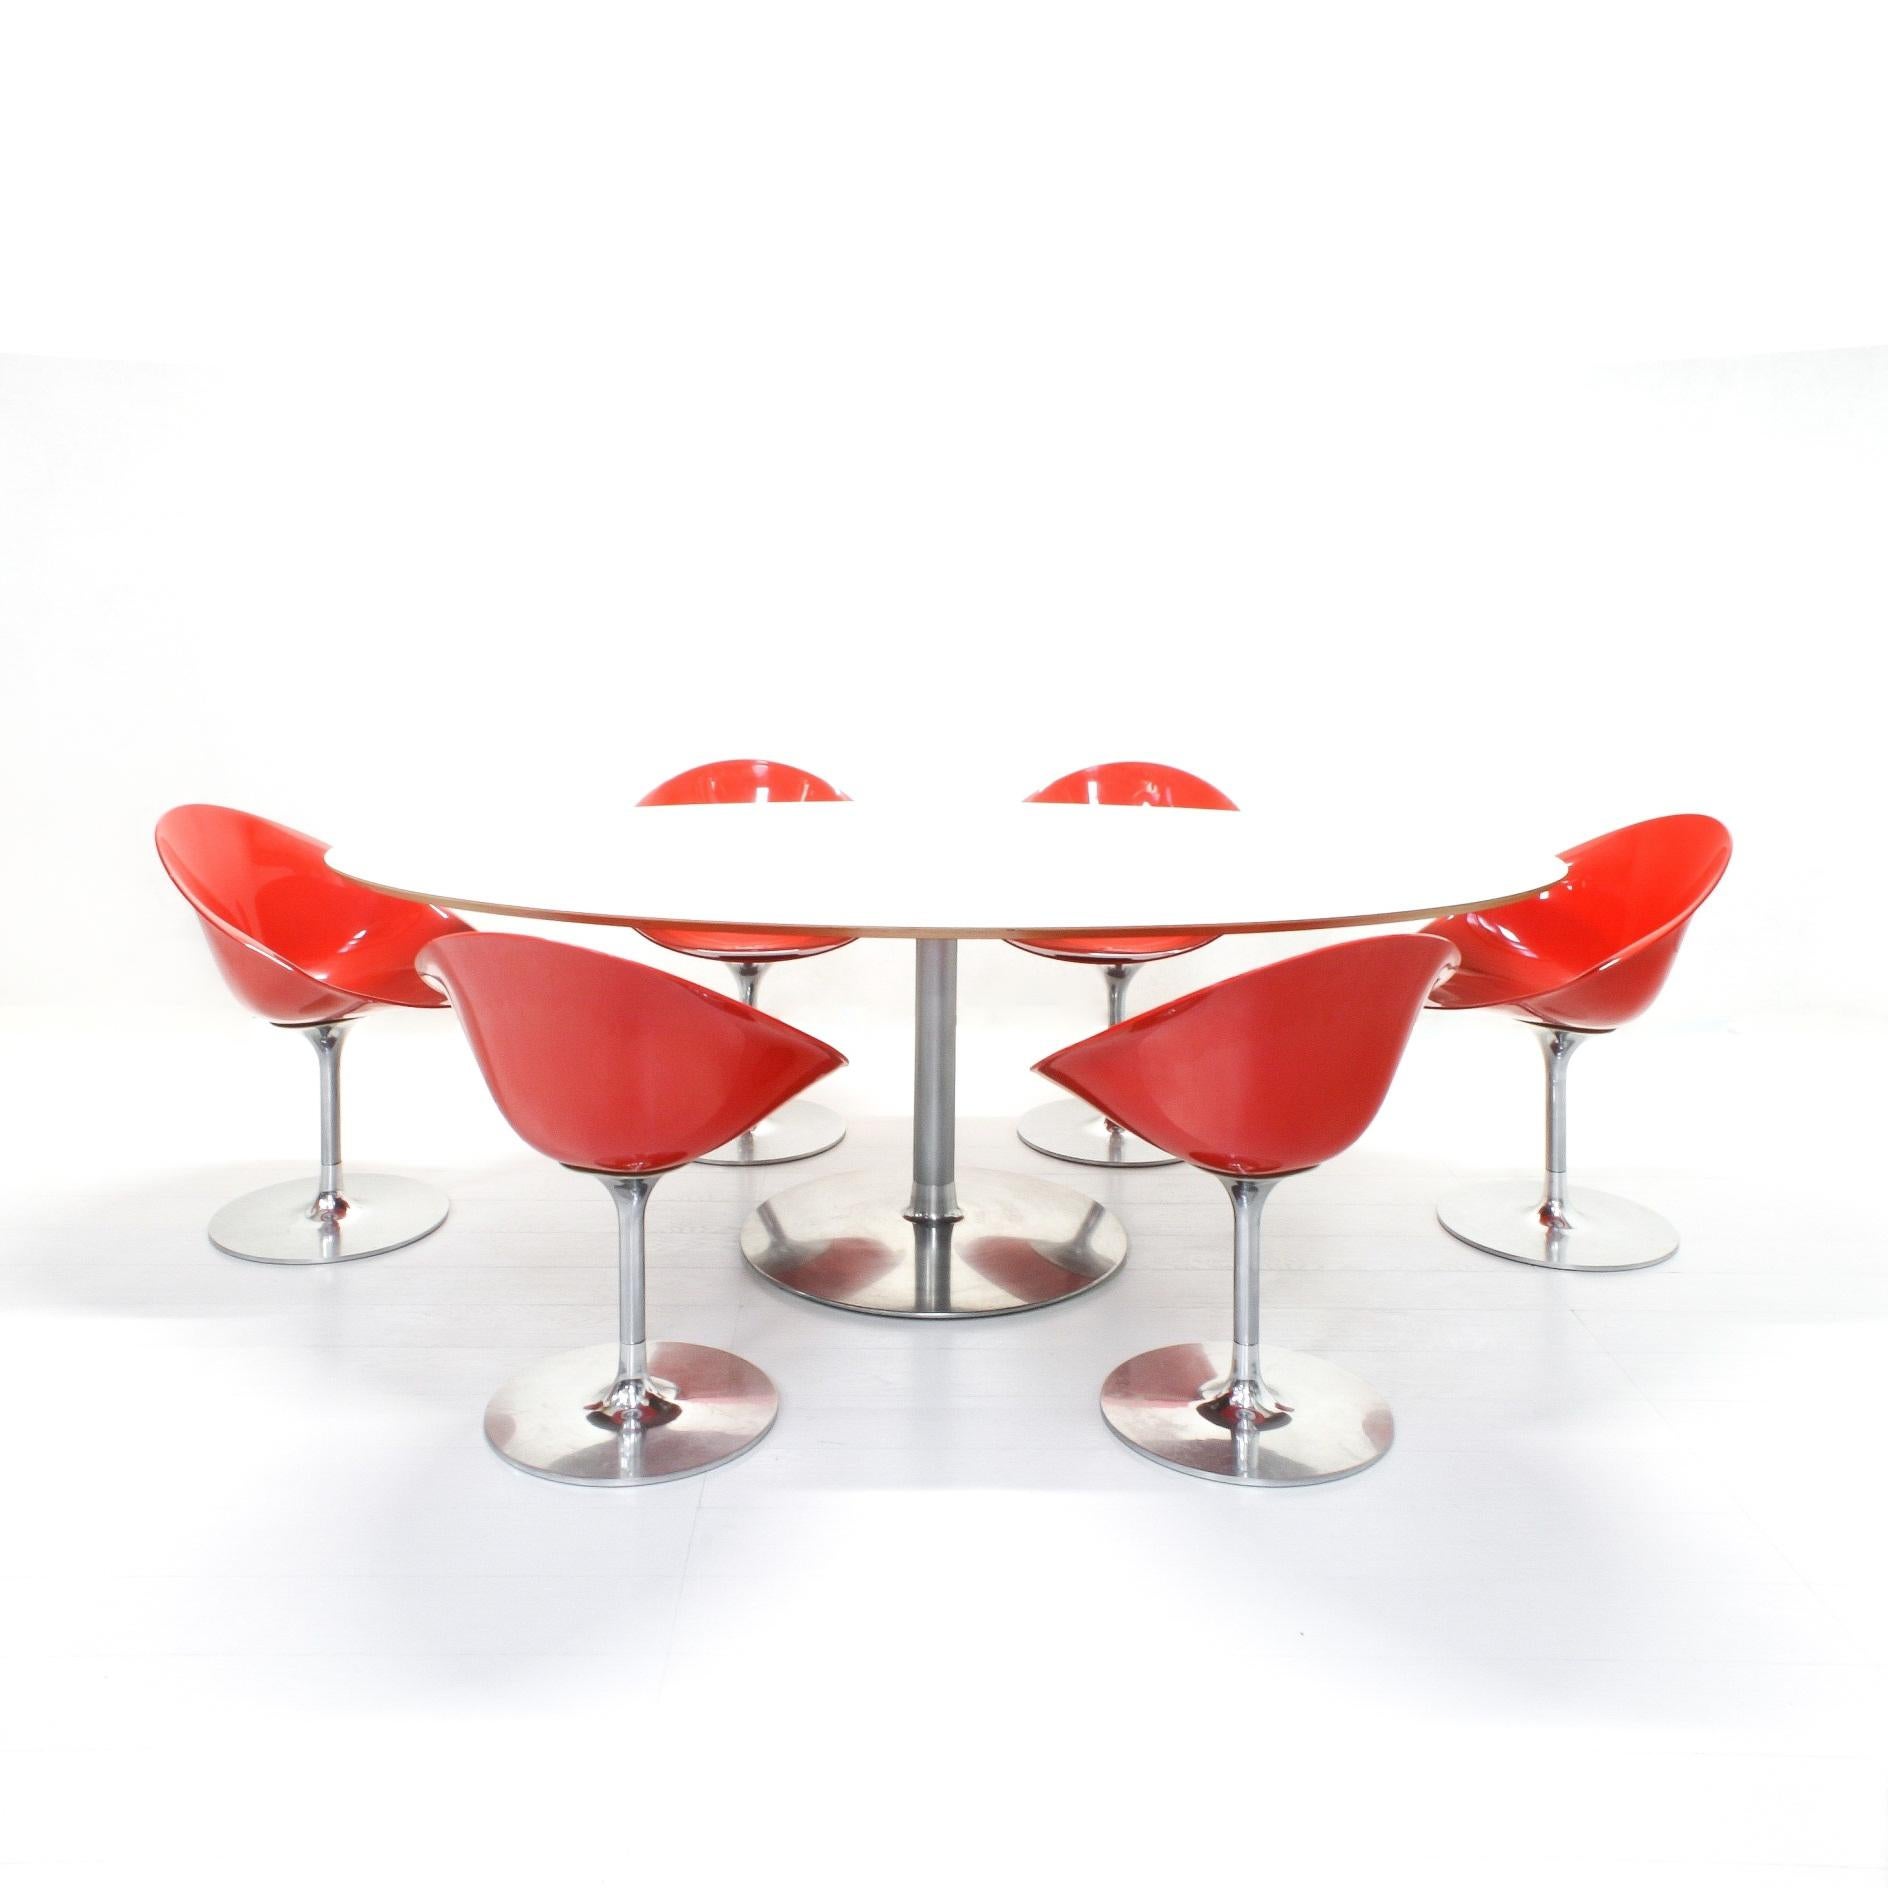 Der 1999 von Philippe Starck für Kartell entworfene Eros Stuhl ist von den 1960er Jahren inspiriert, hat sich aber schnell zu einem modernen Designklassiker entwickelt.
Er zeichnet sich durch die reine kompositorische Struktur aus, die den